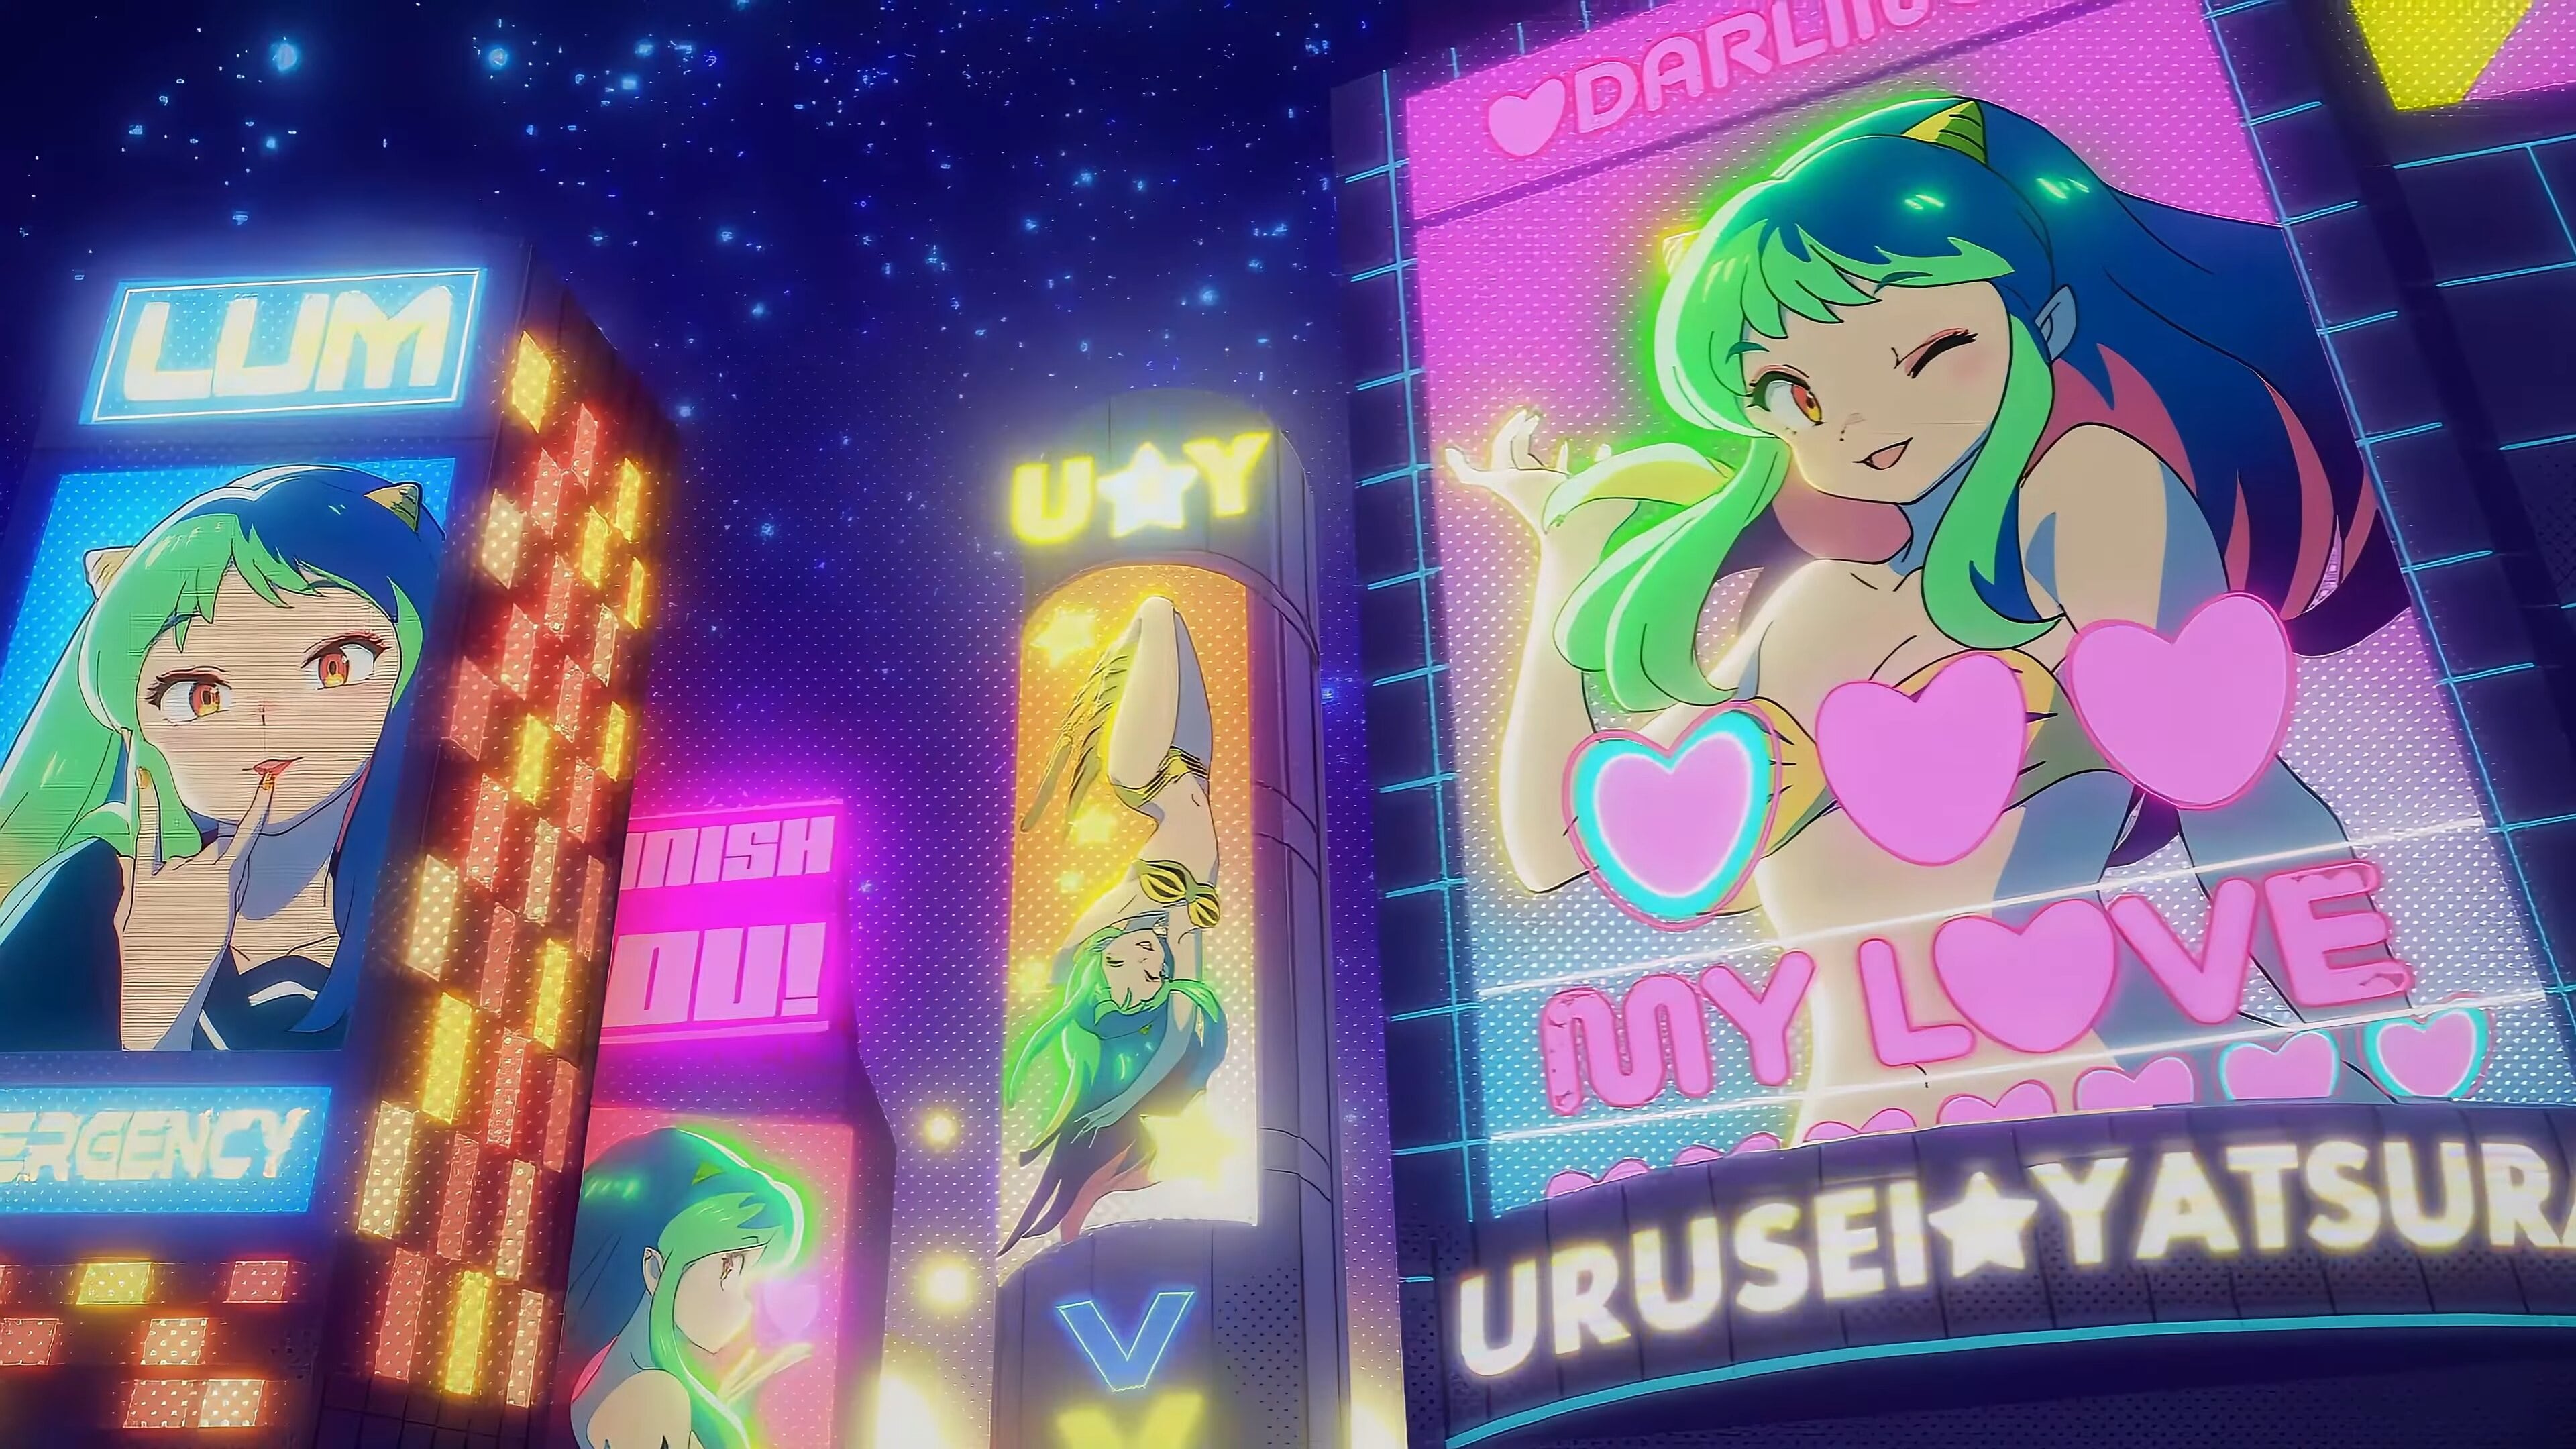 Anime 3840x2160 Urusei Yatsura Lum Invader anime girls signs night advertisements oni wink text lip gloss Anime screenshot one eye closed Lum (Urusei Yatsura)